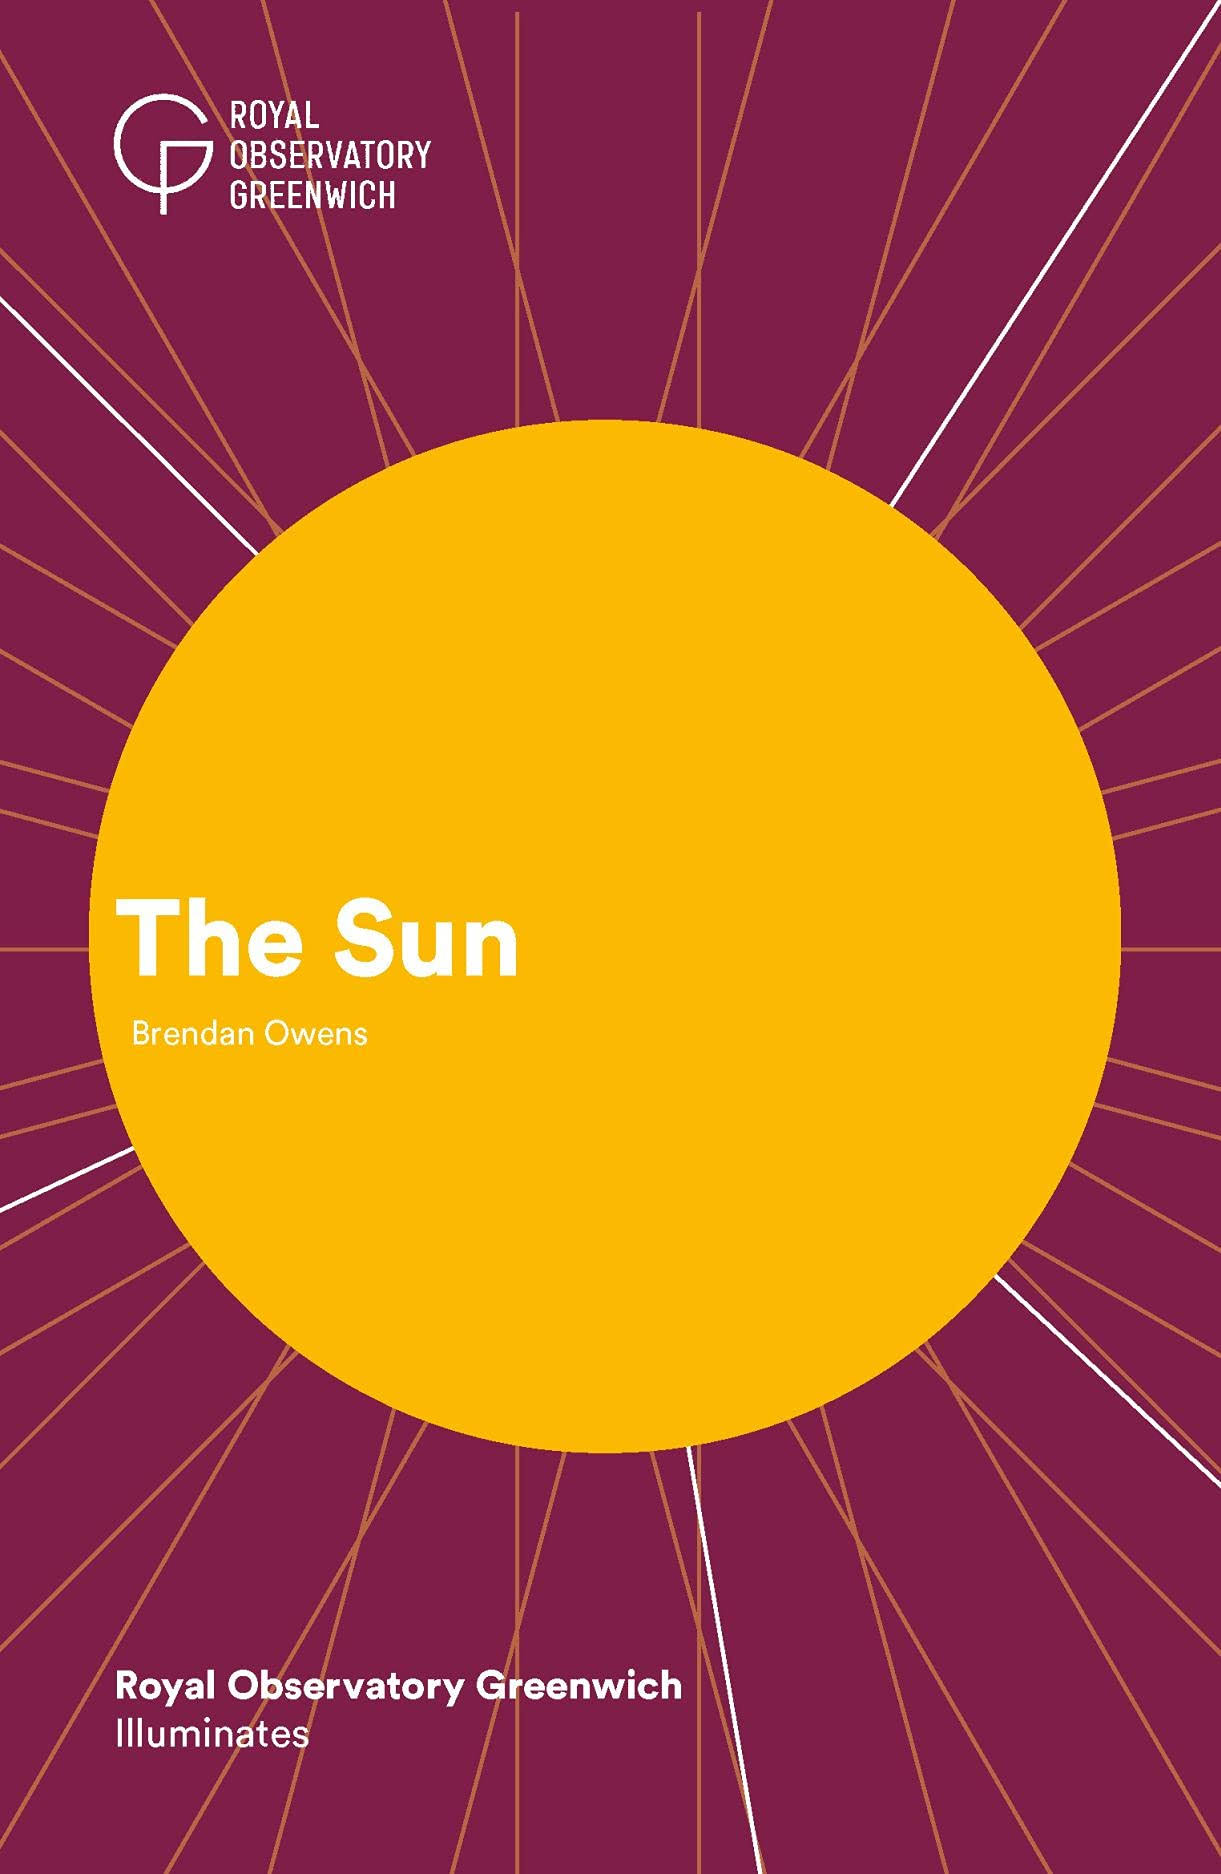 The Sun by Brendan Owens